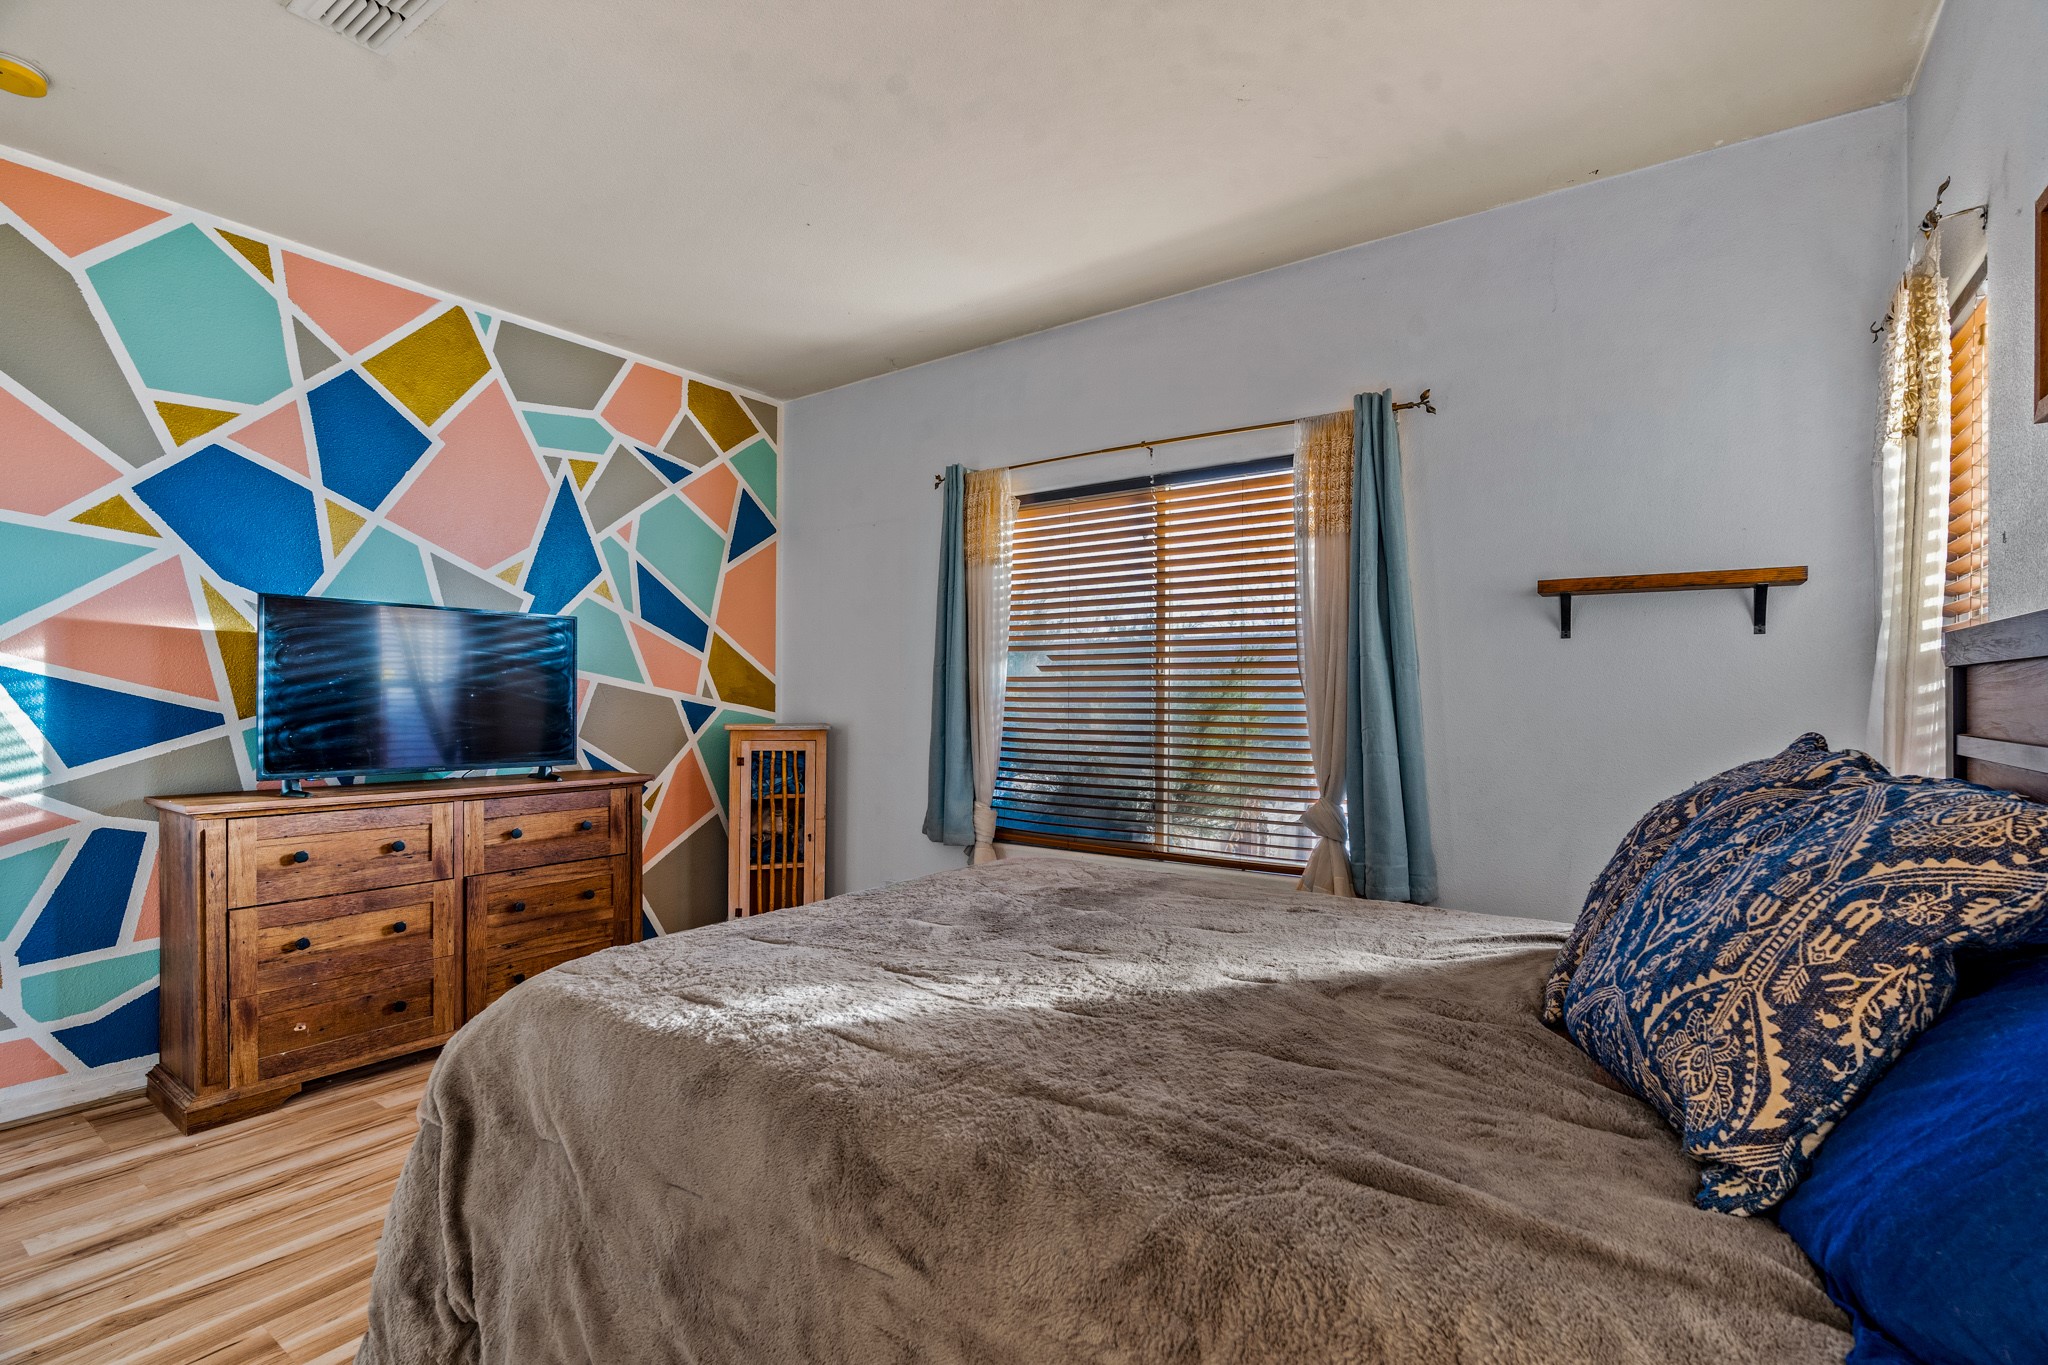 4717 Solecito Loop, Santa Fe, New Mexico 87507, 3 Bedrooms Bedrooms, ,2 BathroomsBathrooms,Residential,For Sale,4717 Solecito Loop,202342097